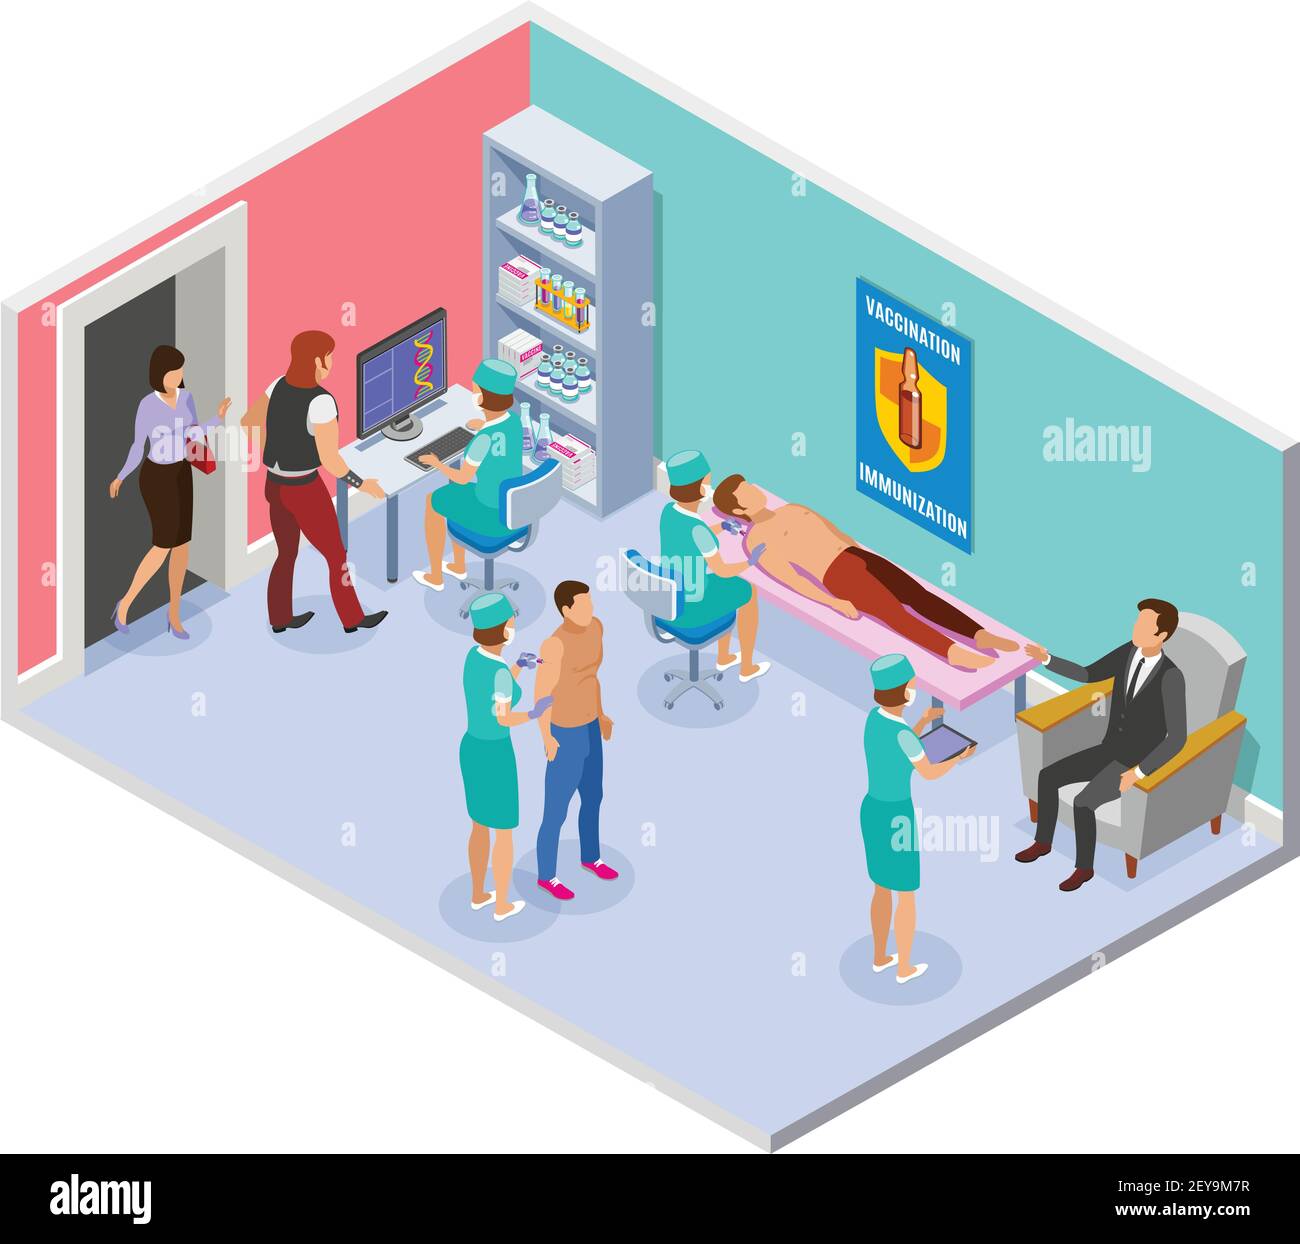 Impfung isometrische Zusammensetzung mit Blick auf Krankenhauszimmer mit Innenraum Elemente und medizinisches Personal Verabreichung von Injektionen Vektor-Illustration Stock Vektor